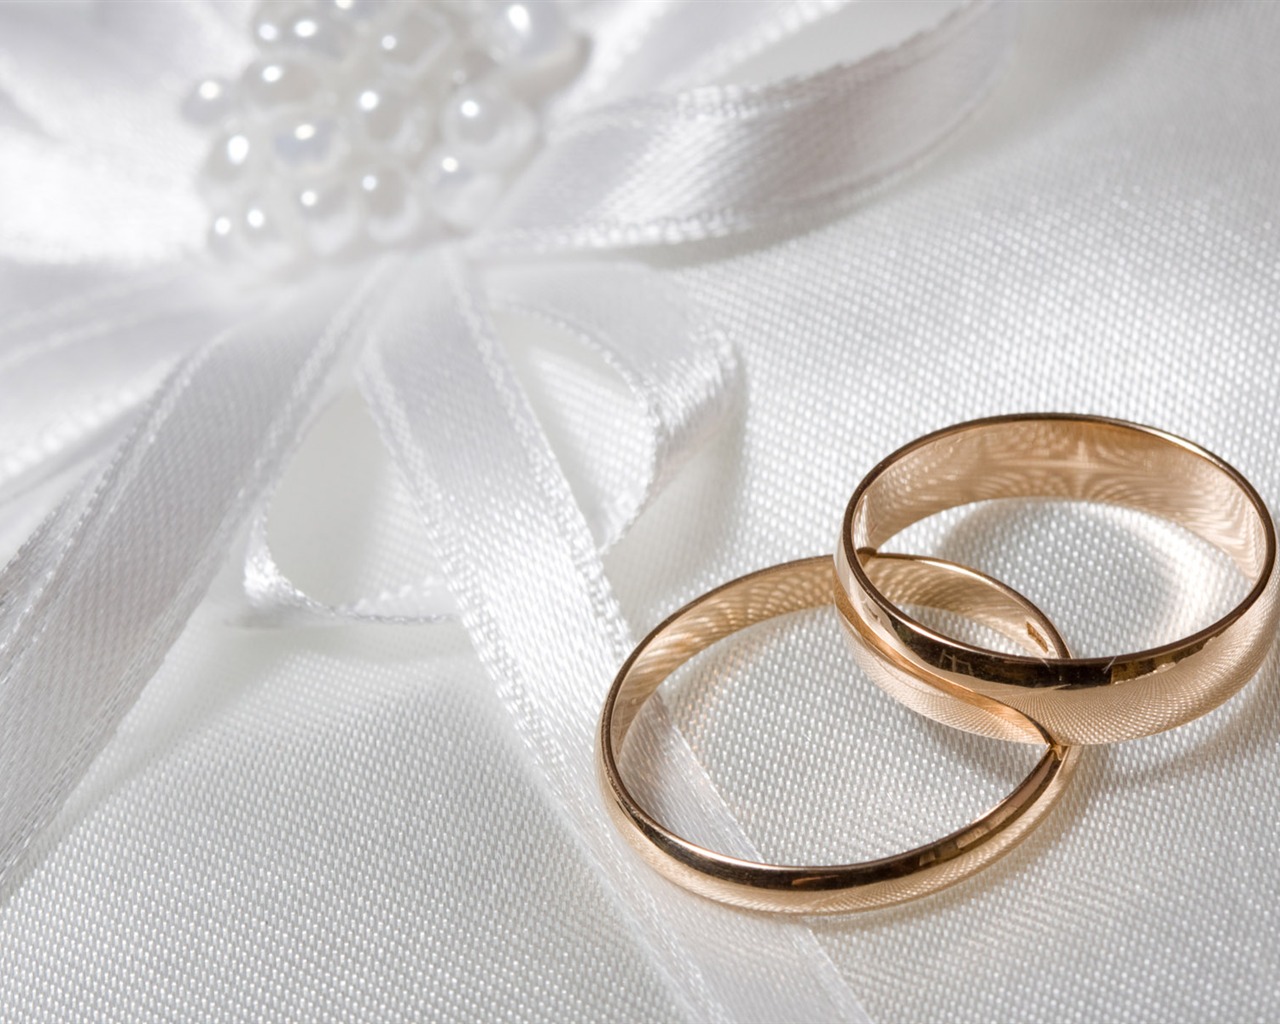 Mariage et papier peint anneau de mariage (2) #14 - 1280x1024